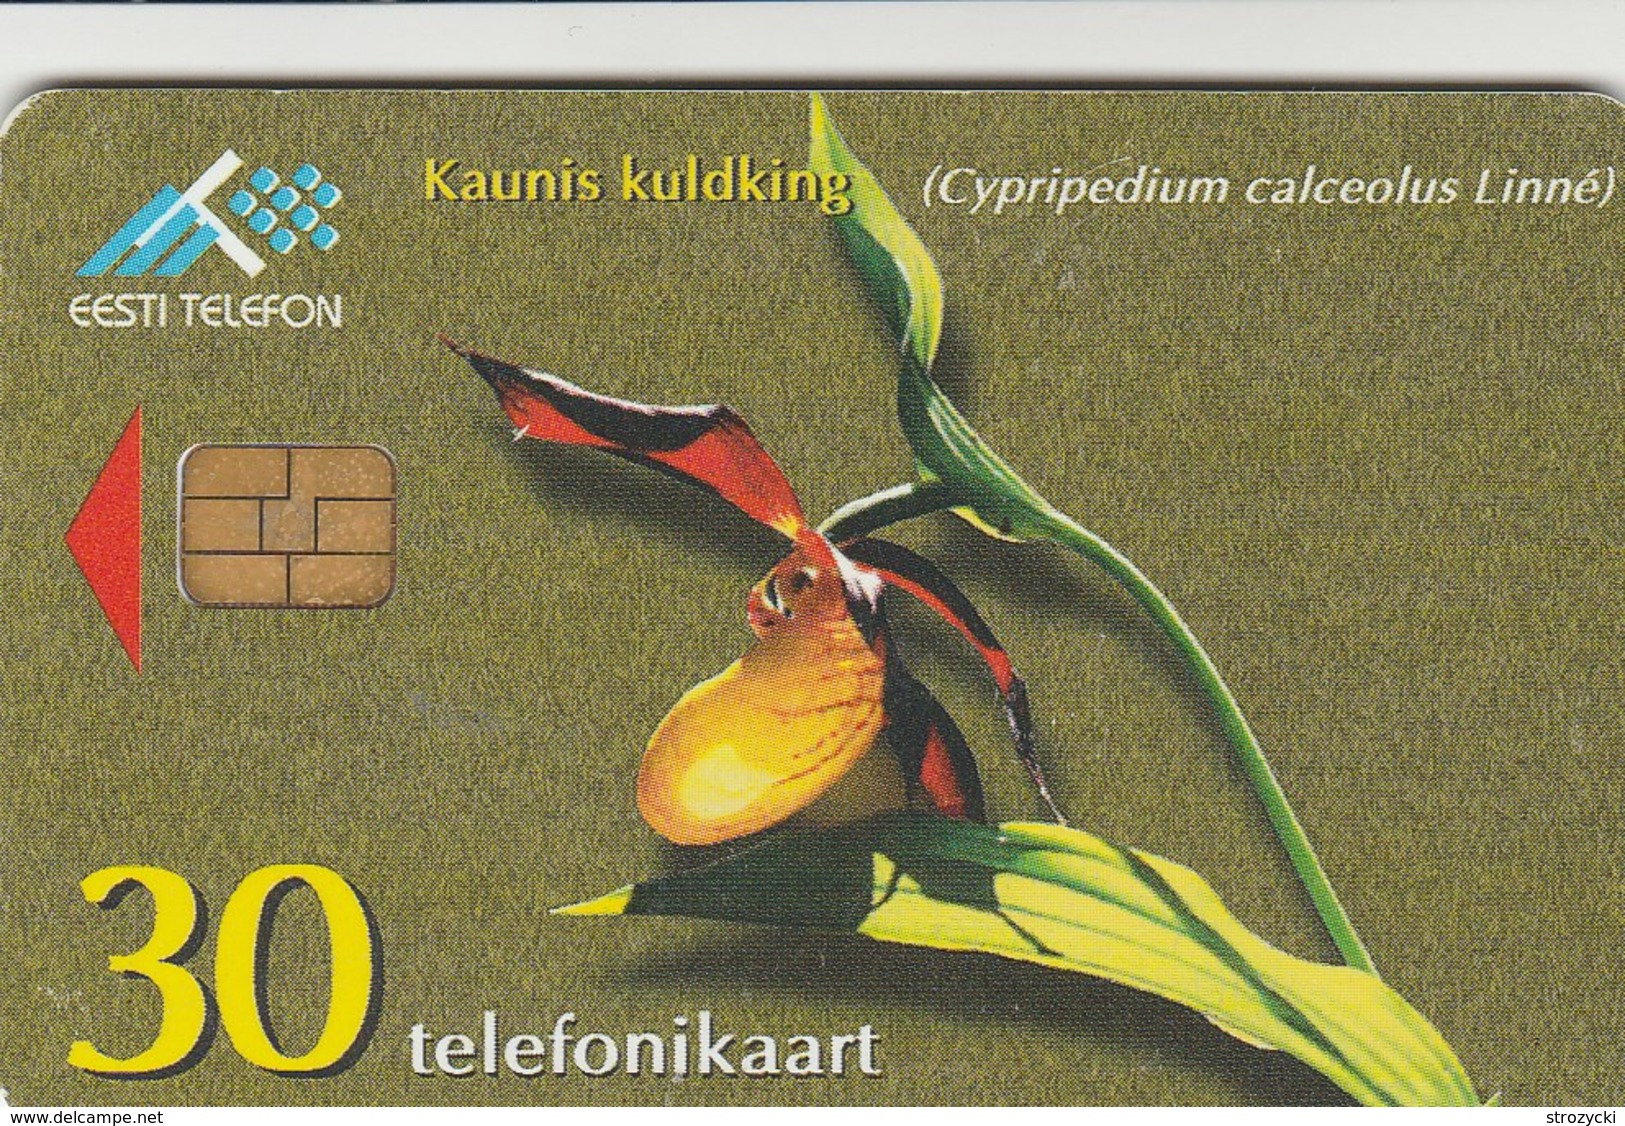 Estonia - Lady's-Slipper Orchid - Estonia